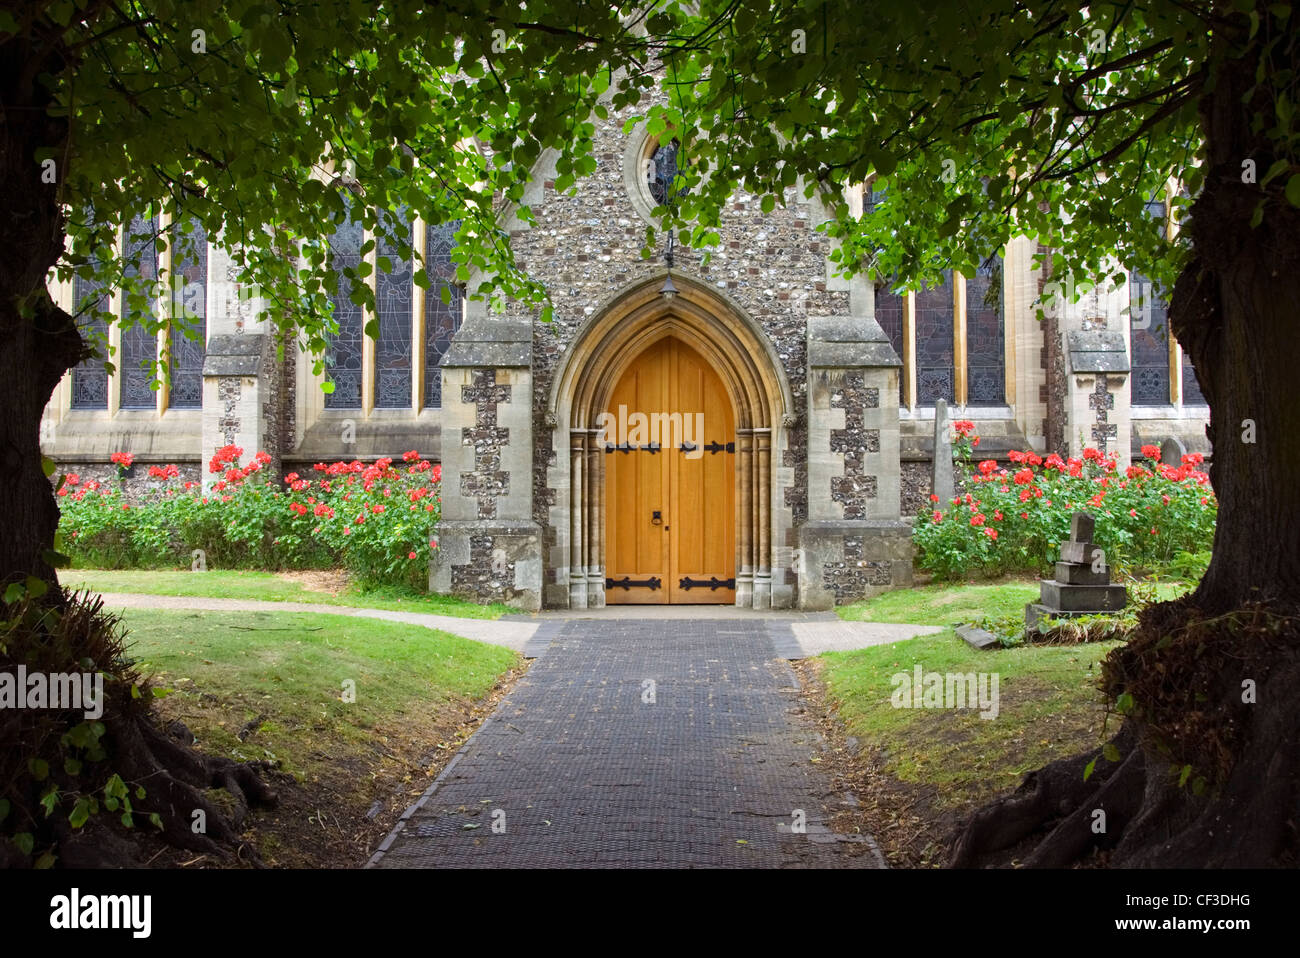 Baum gerahmt Pfad und die Tür zu einer alten englischen Kirche. Untersuchungen zufolge einer von zehn Menschen in Großbritannien besucht Kirche jede Woche Stockfoto